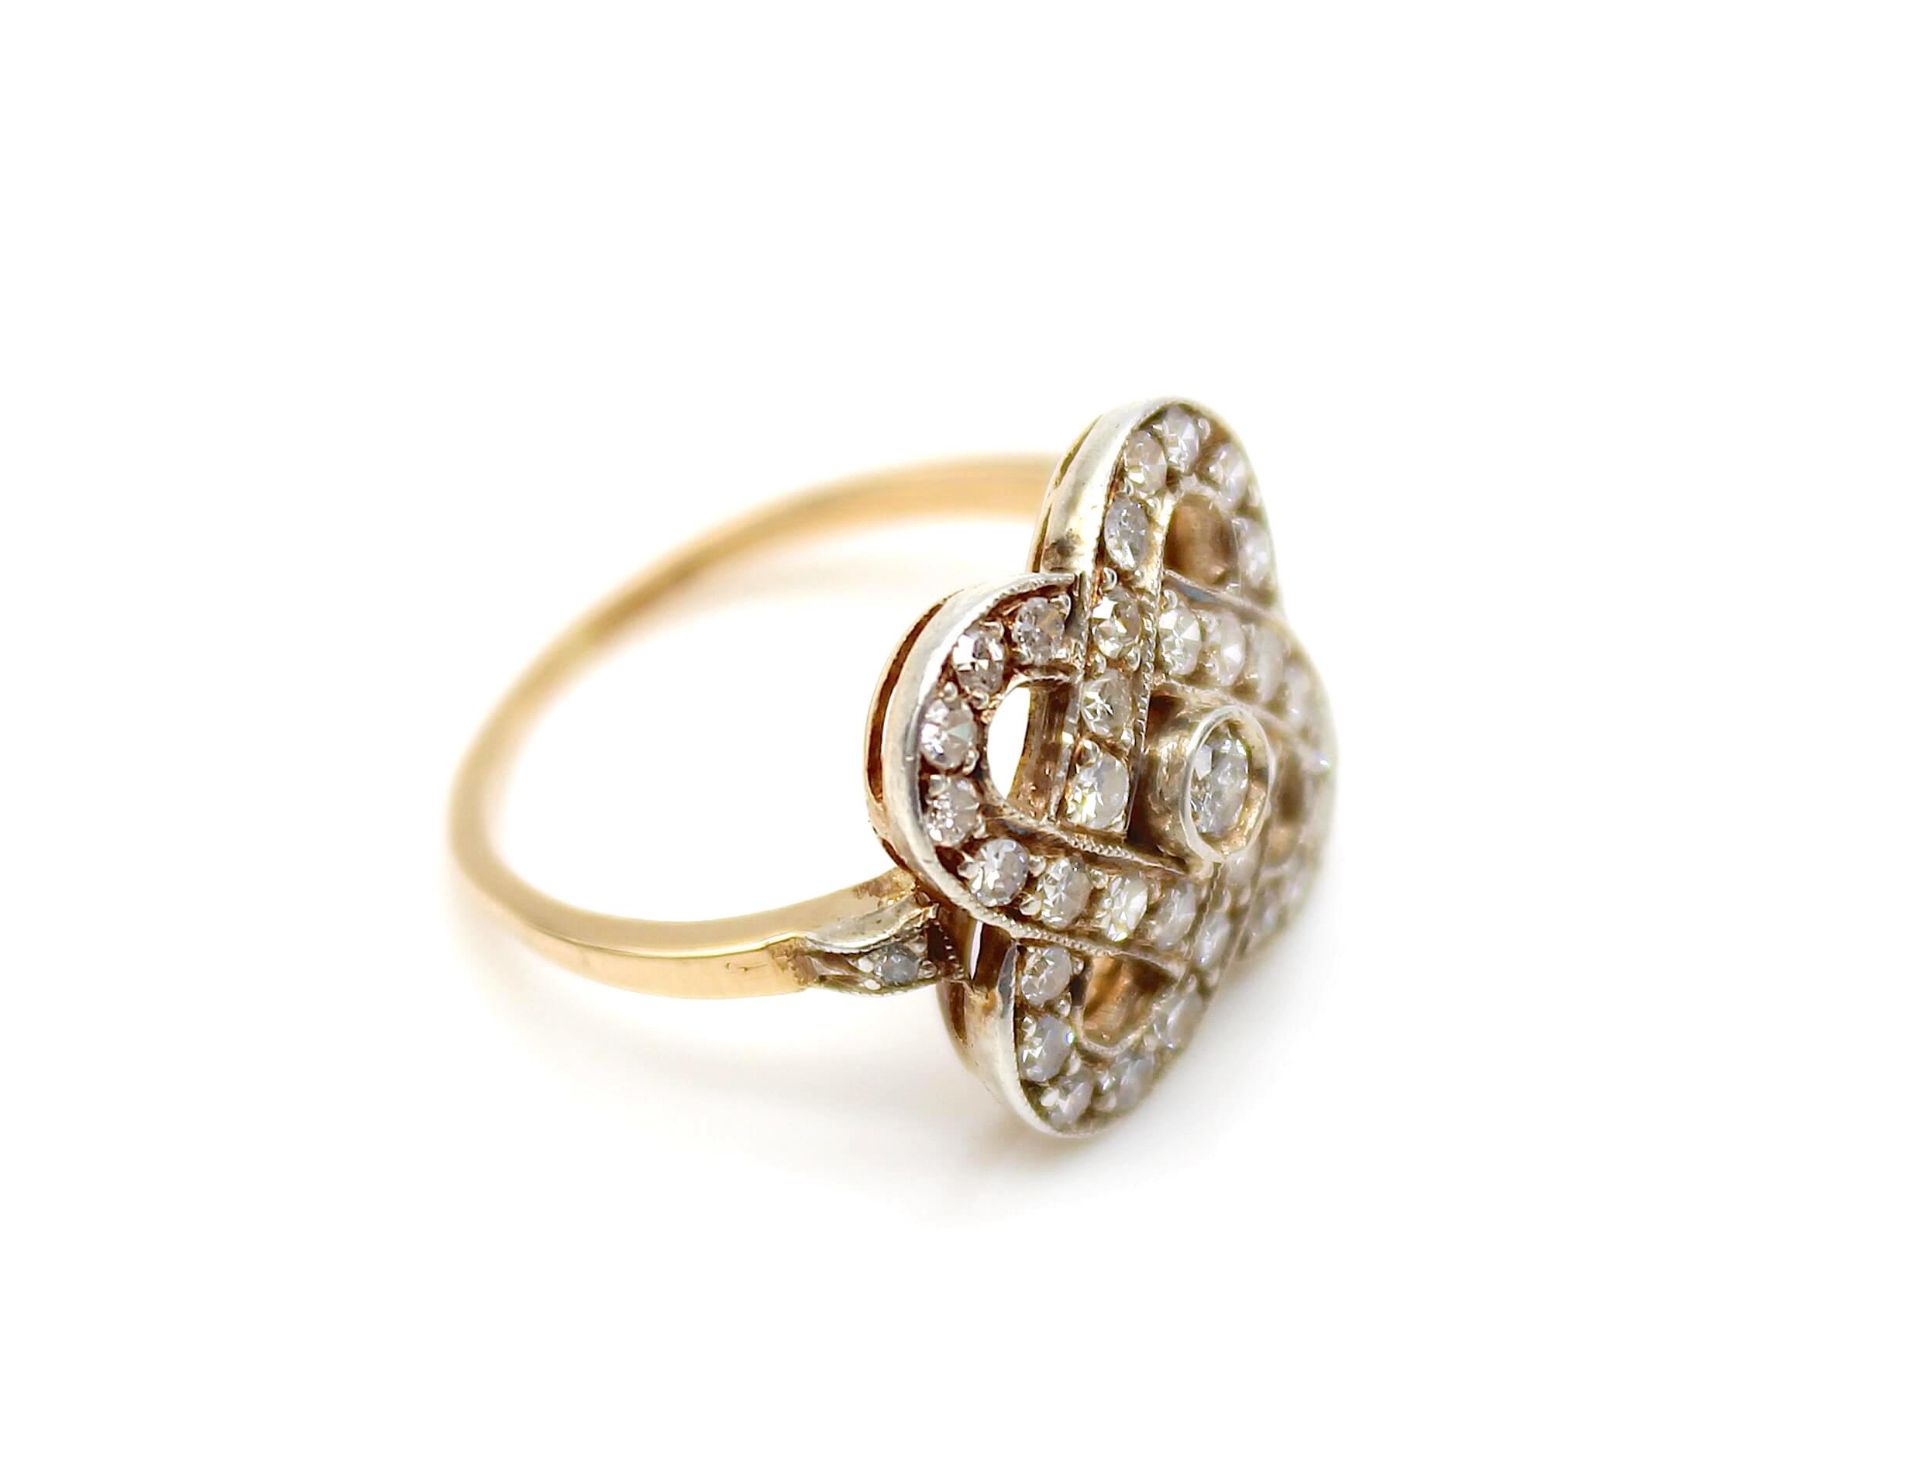 Ring geprüft auf 750er Gold, platiniert mit div. Diamanten, gesamt ca. 0,70 ct in mittlerer - Bild 3 aus 3